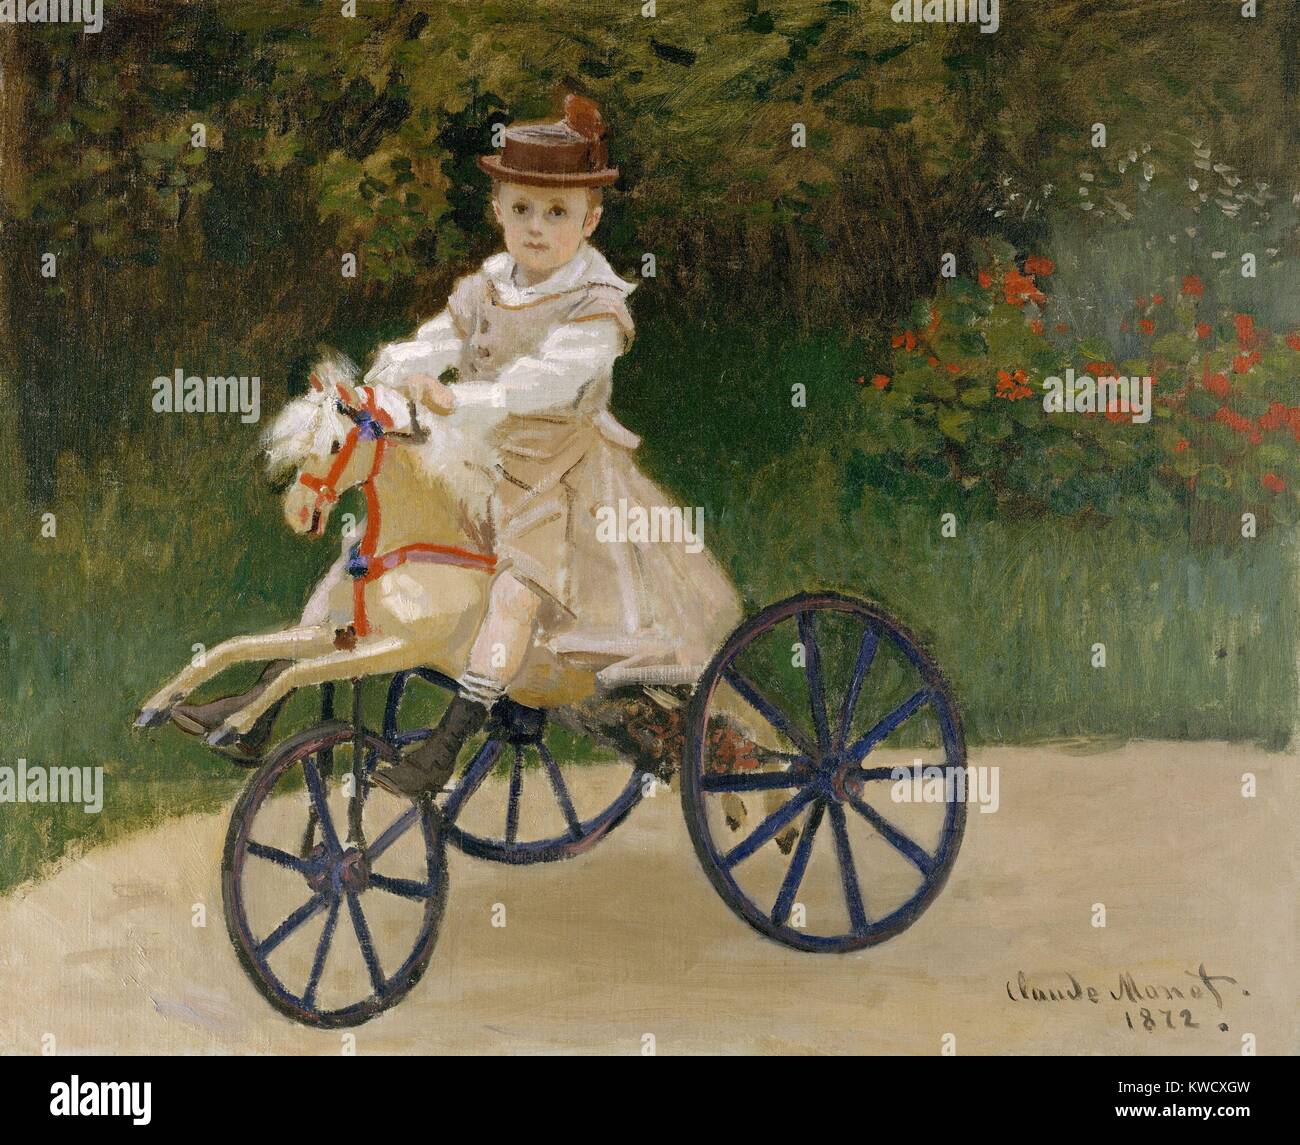 Jean Monet auf seinem Steckenpferd, von Claude Monet, 1872, französischer impressionistischer Malerei, Öl auf Leinwand. Monet hielt dieses Portrait von seinen 5 Jahre alten Sohn alle seine Leben (BSLOC 2017 3 22) Stockfoto